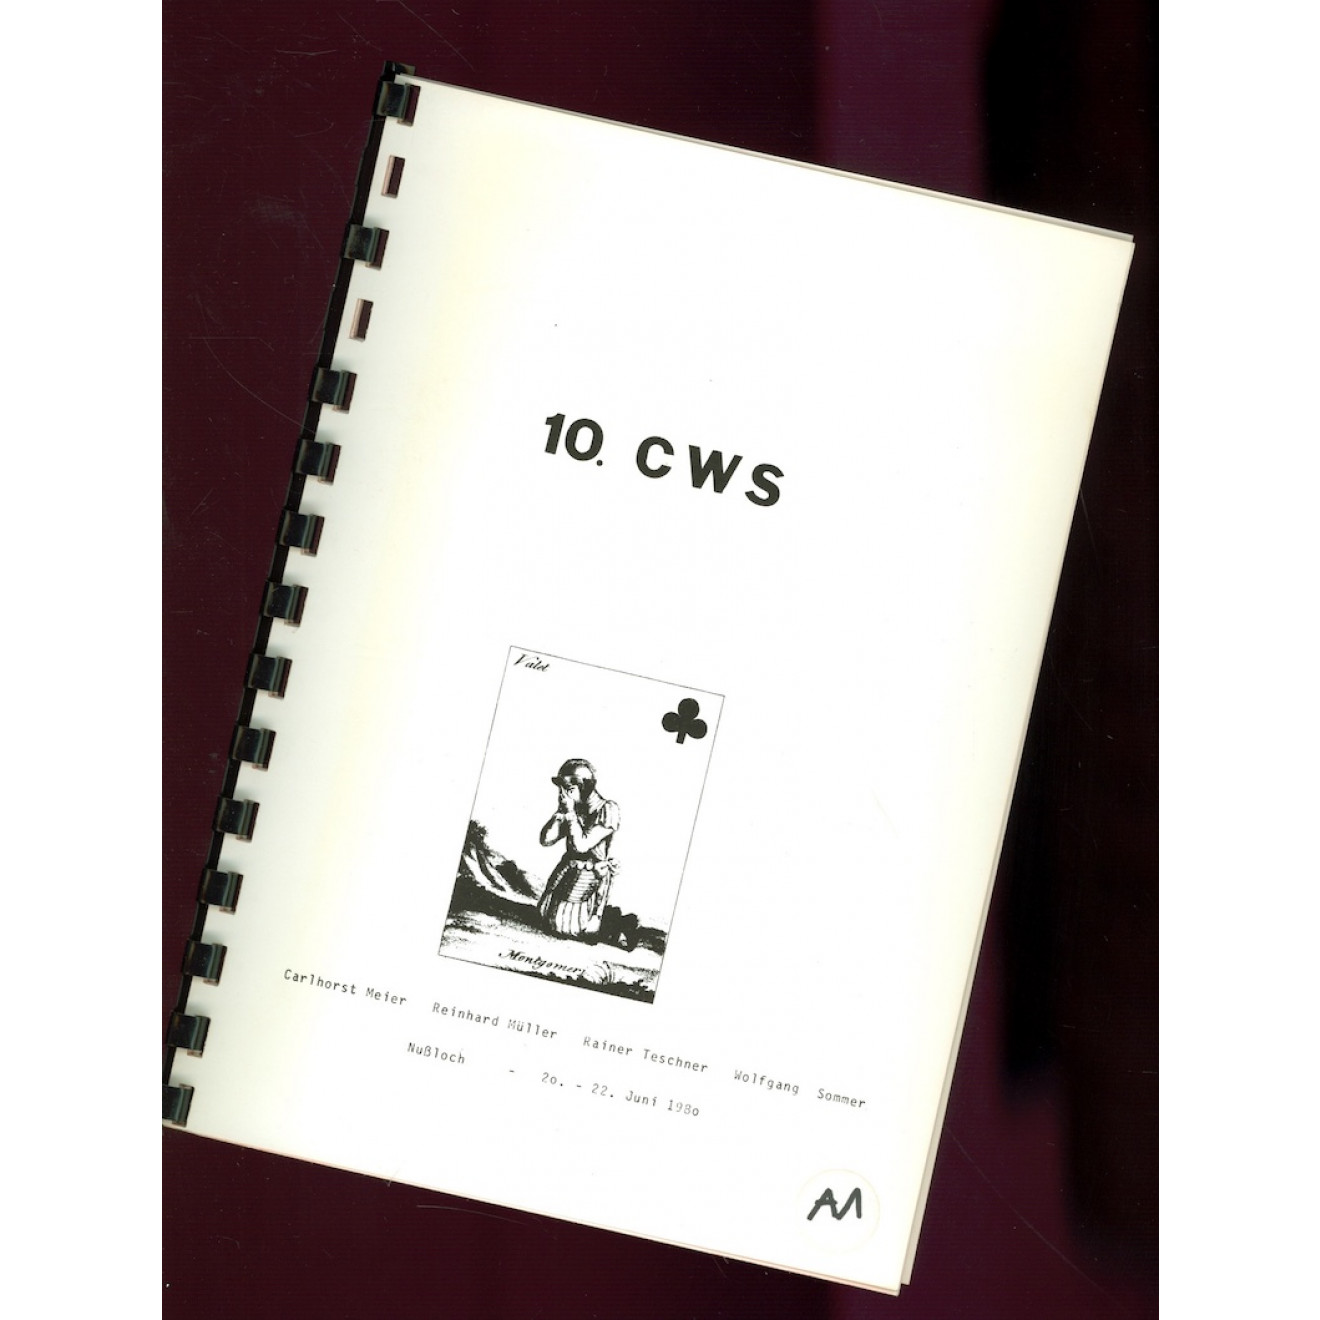 10. CWS (Card Work Shop)